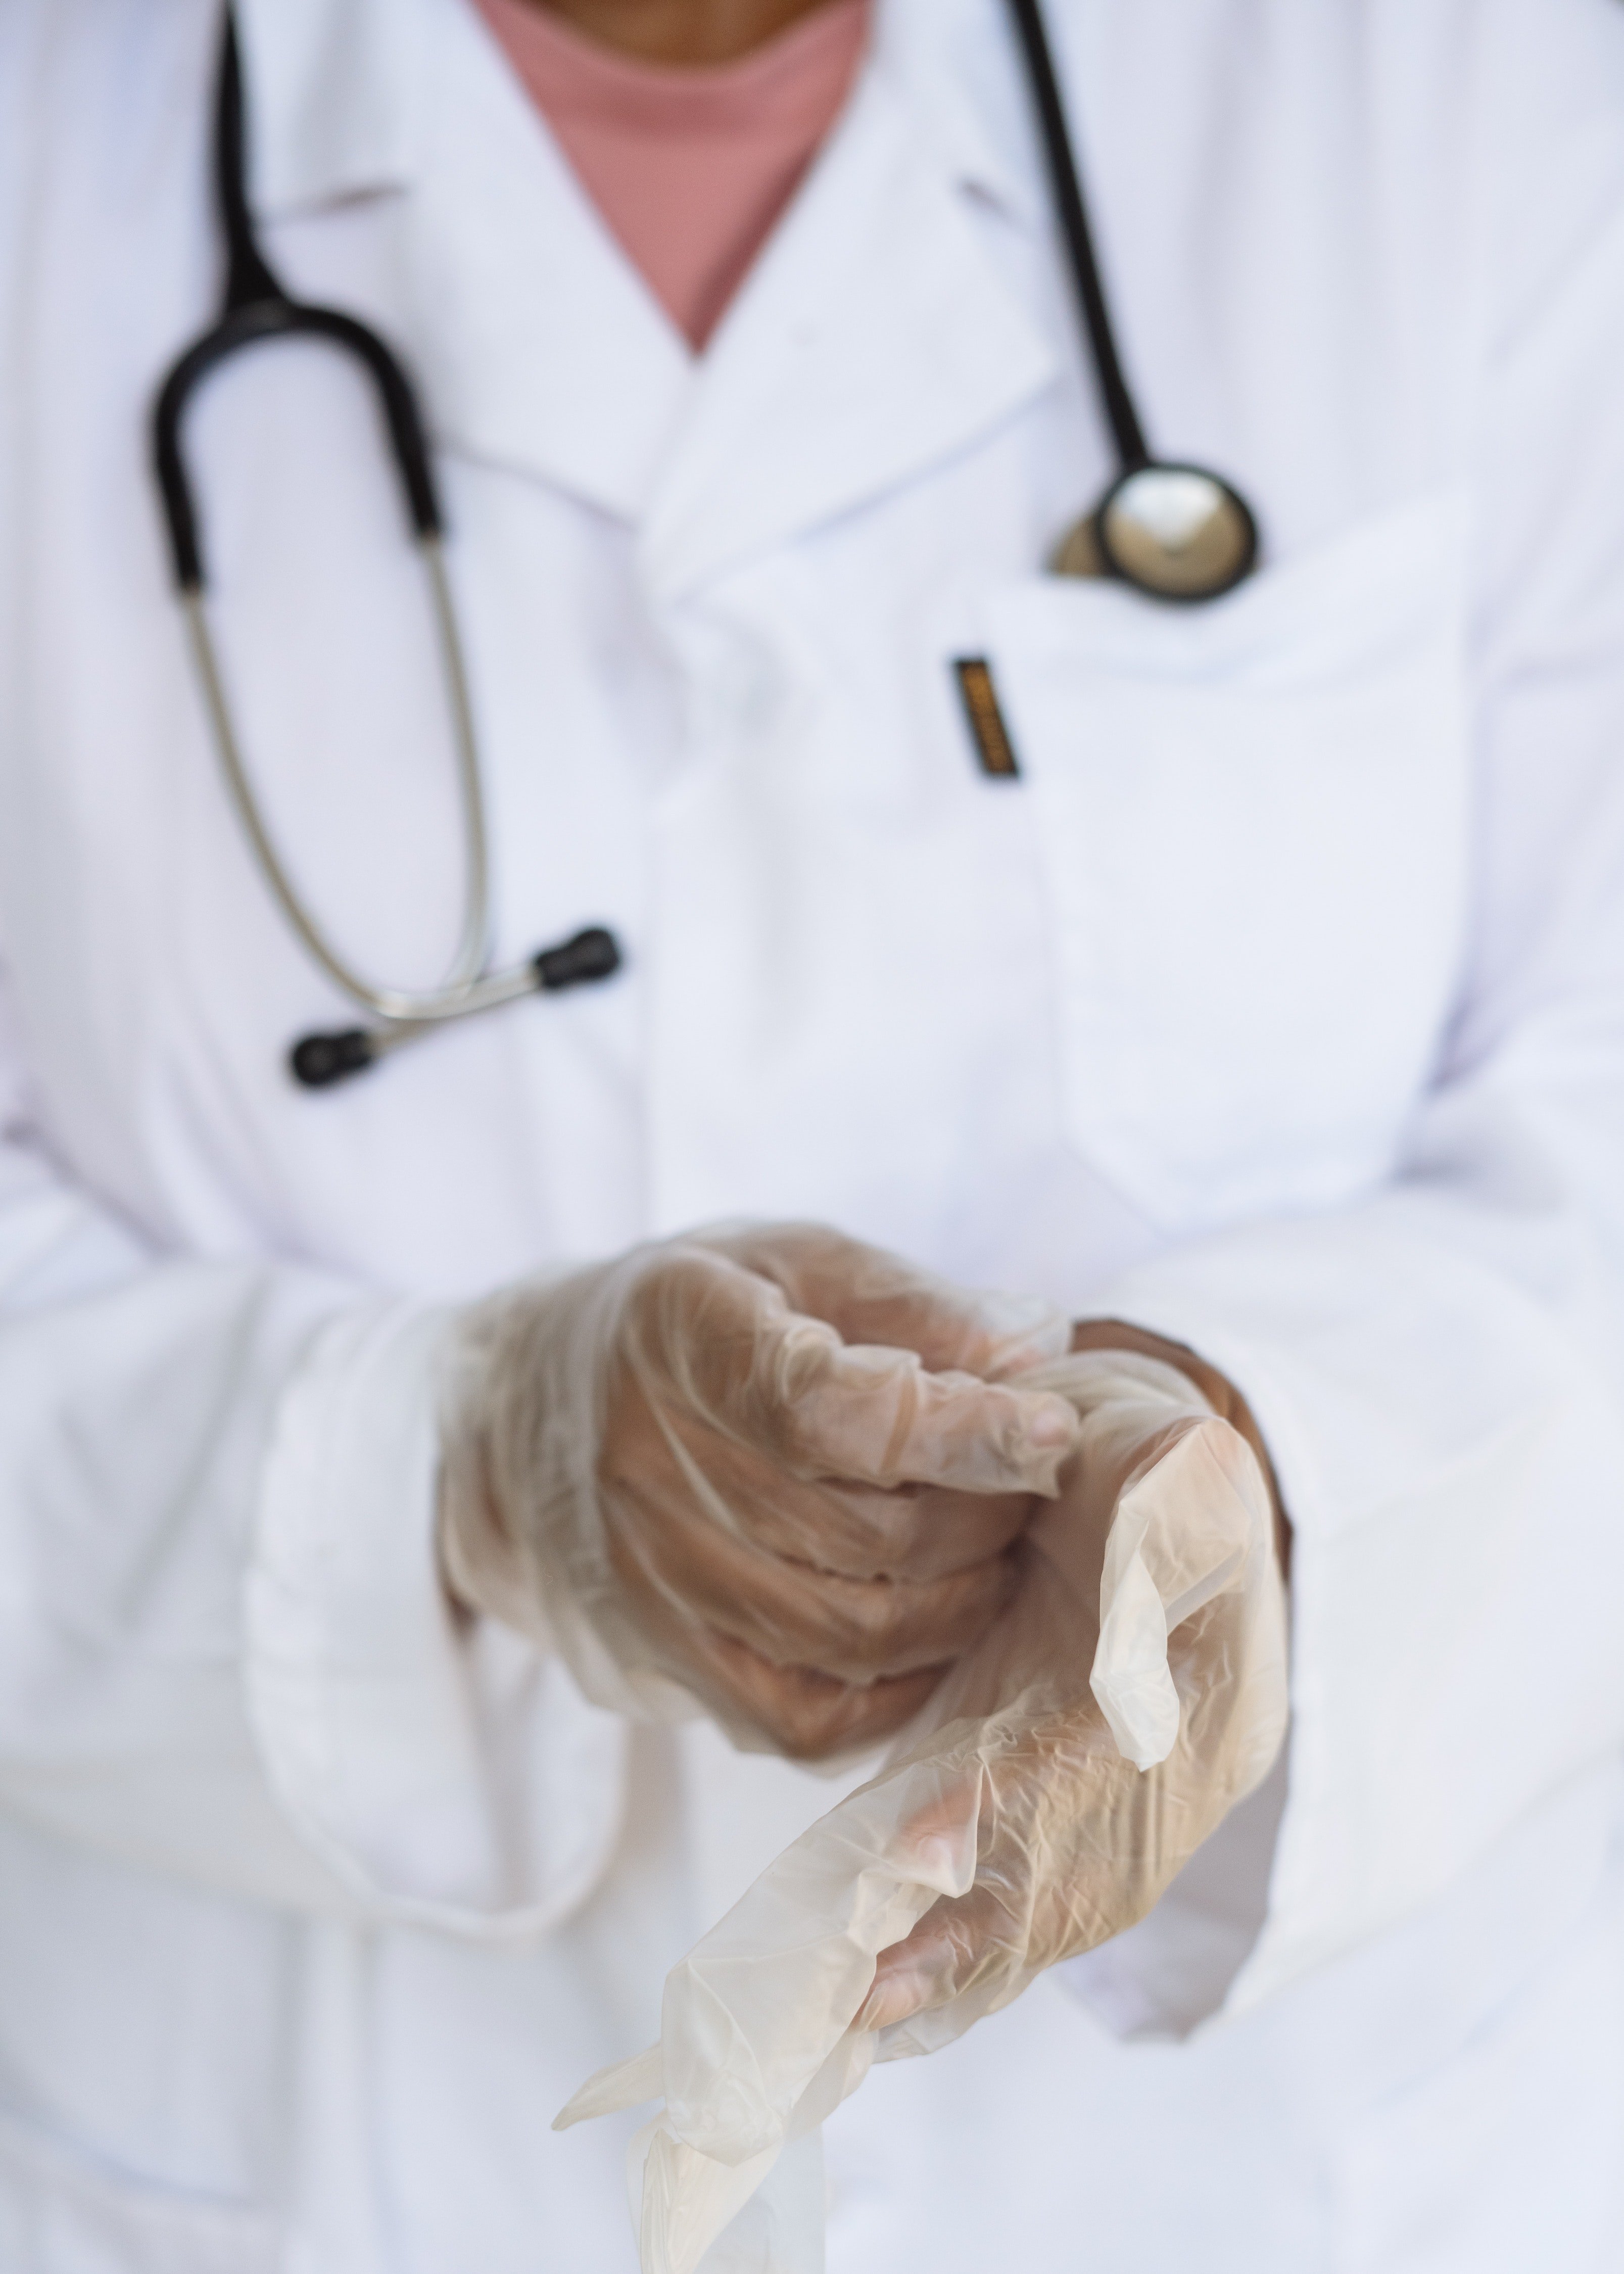 Médico con estetoscopio colgado del cuello. | Foto: Pexels